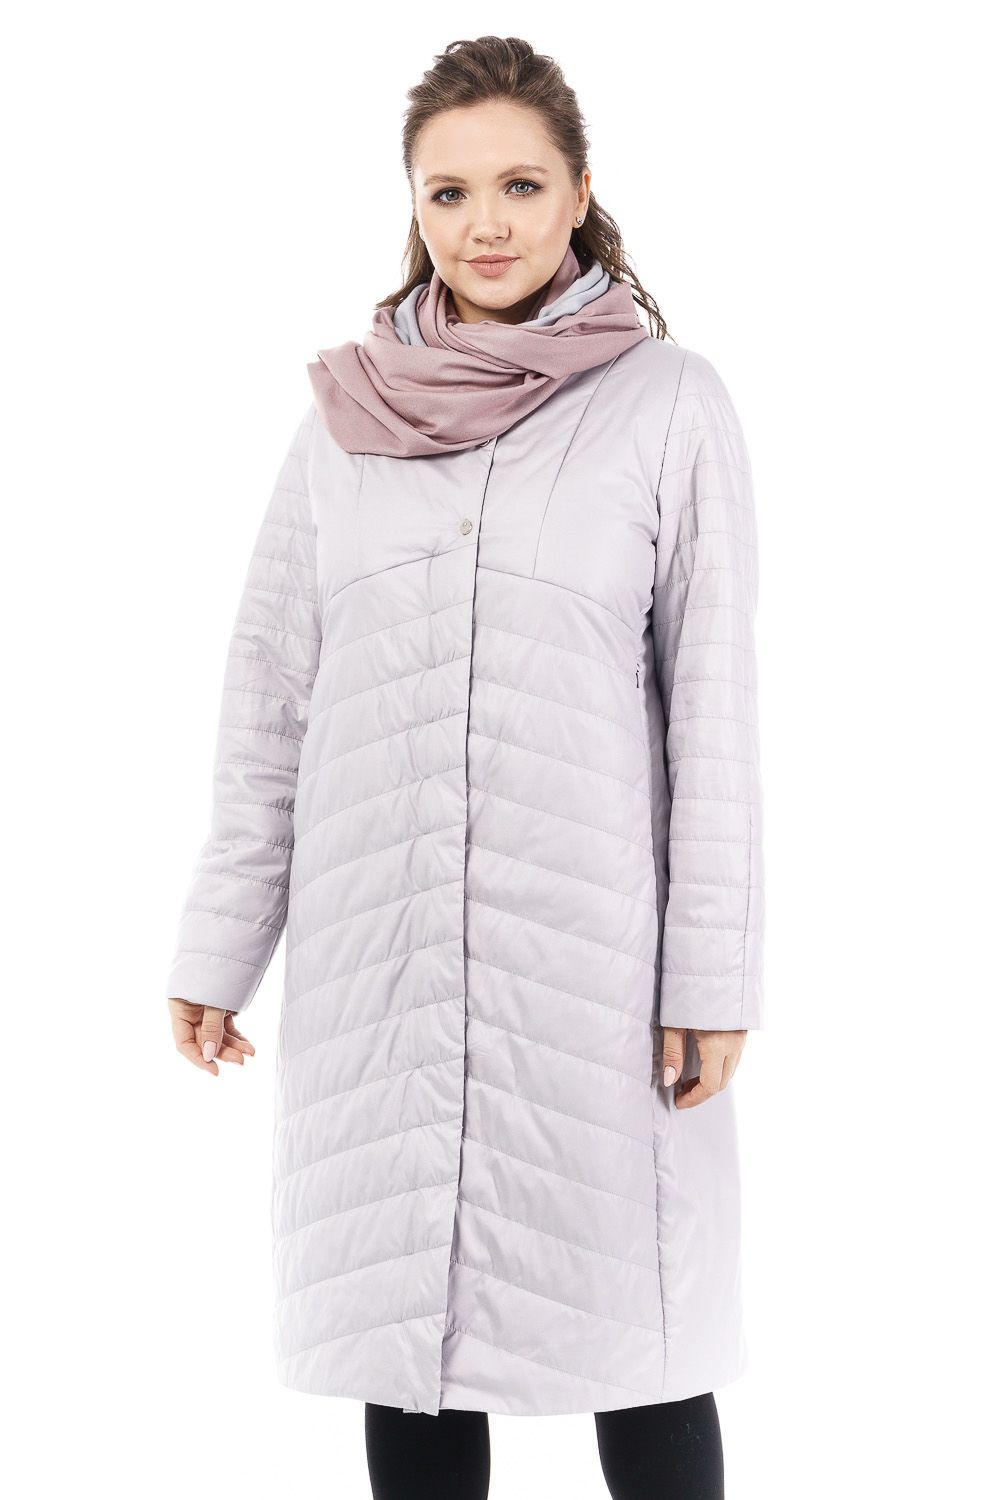 Пальто женское OHARA MCV-20706 серое 46 RU